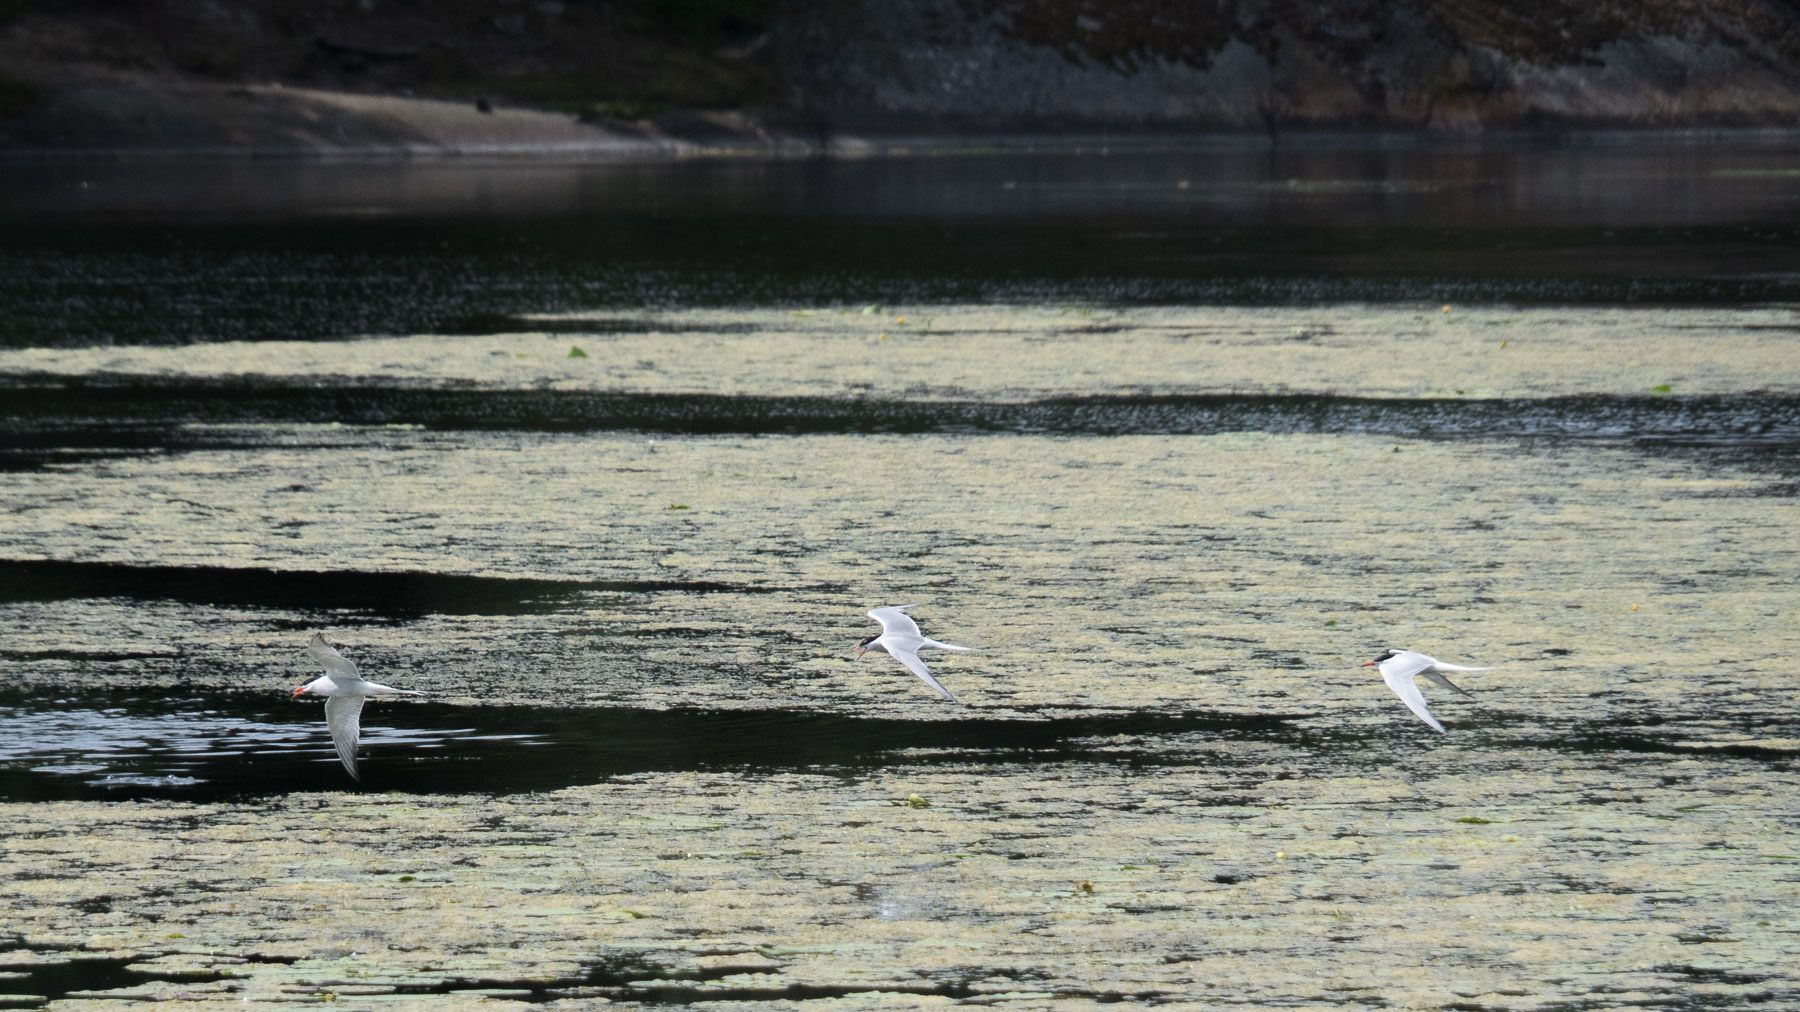 Речная крачка (Sterna hirundo)Речная крачка (Sterna hirundo) встречается в южной части Швеции. Перелётная птица, гнездится как у пресноводных водоёмов, так и около моря. Озеро Magelungen, Стокгольм, июнь 2016 года. Автор фото: Сутормина Марина